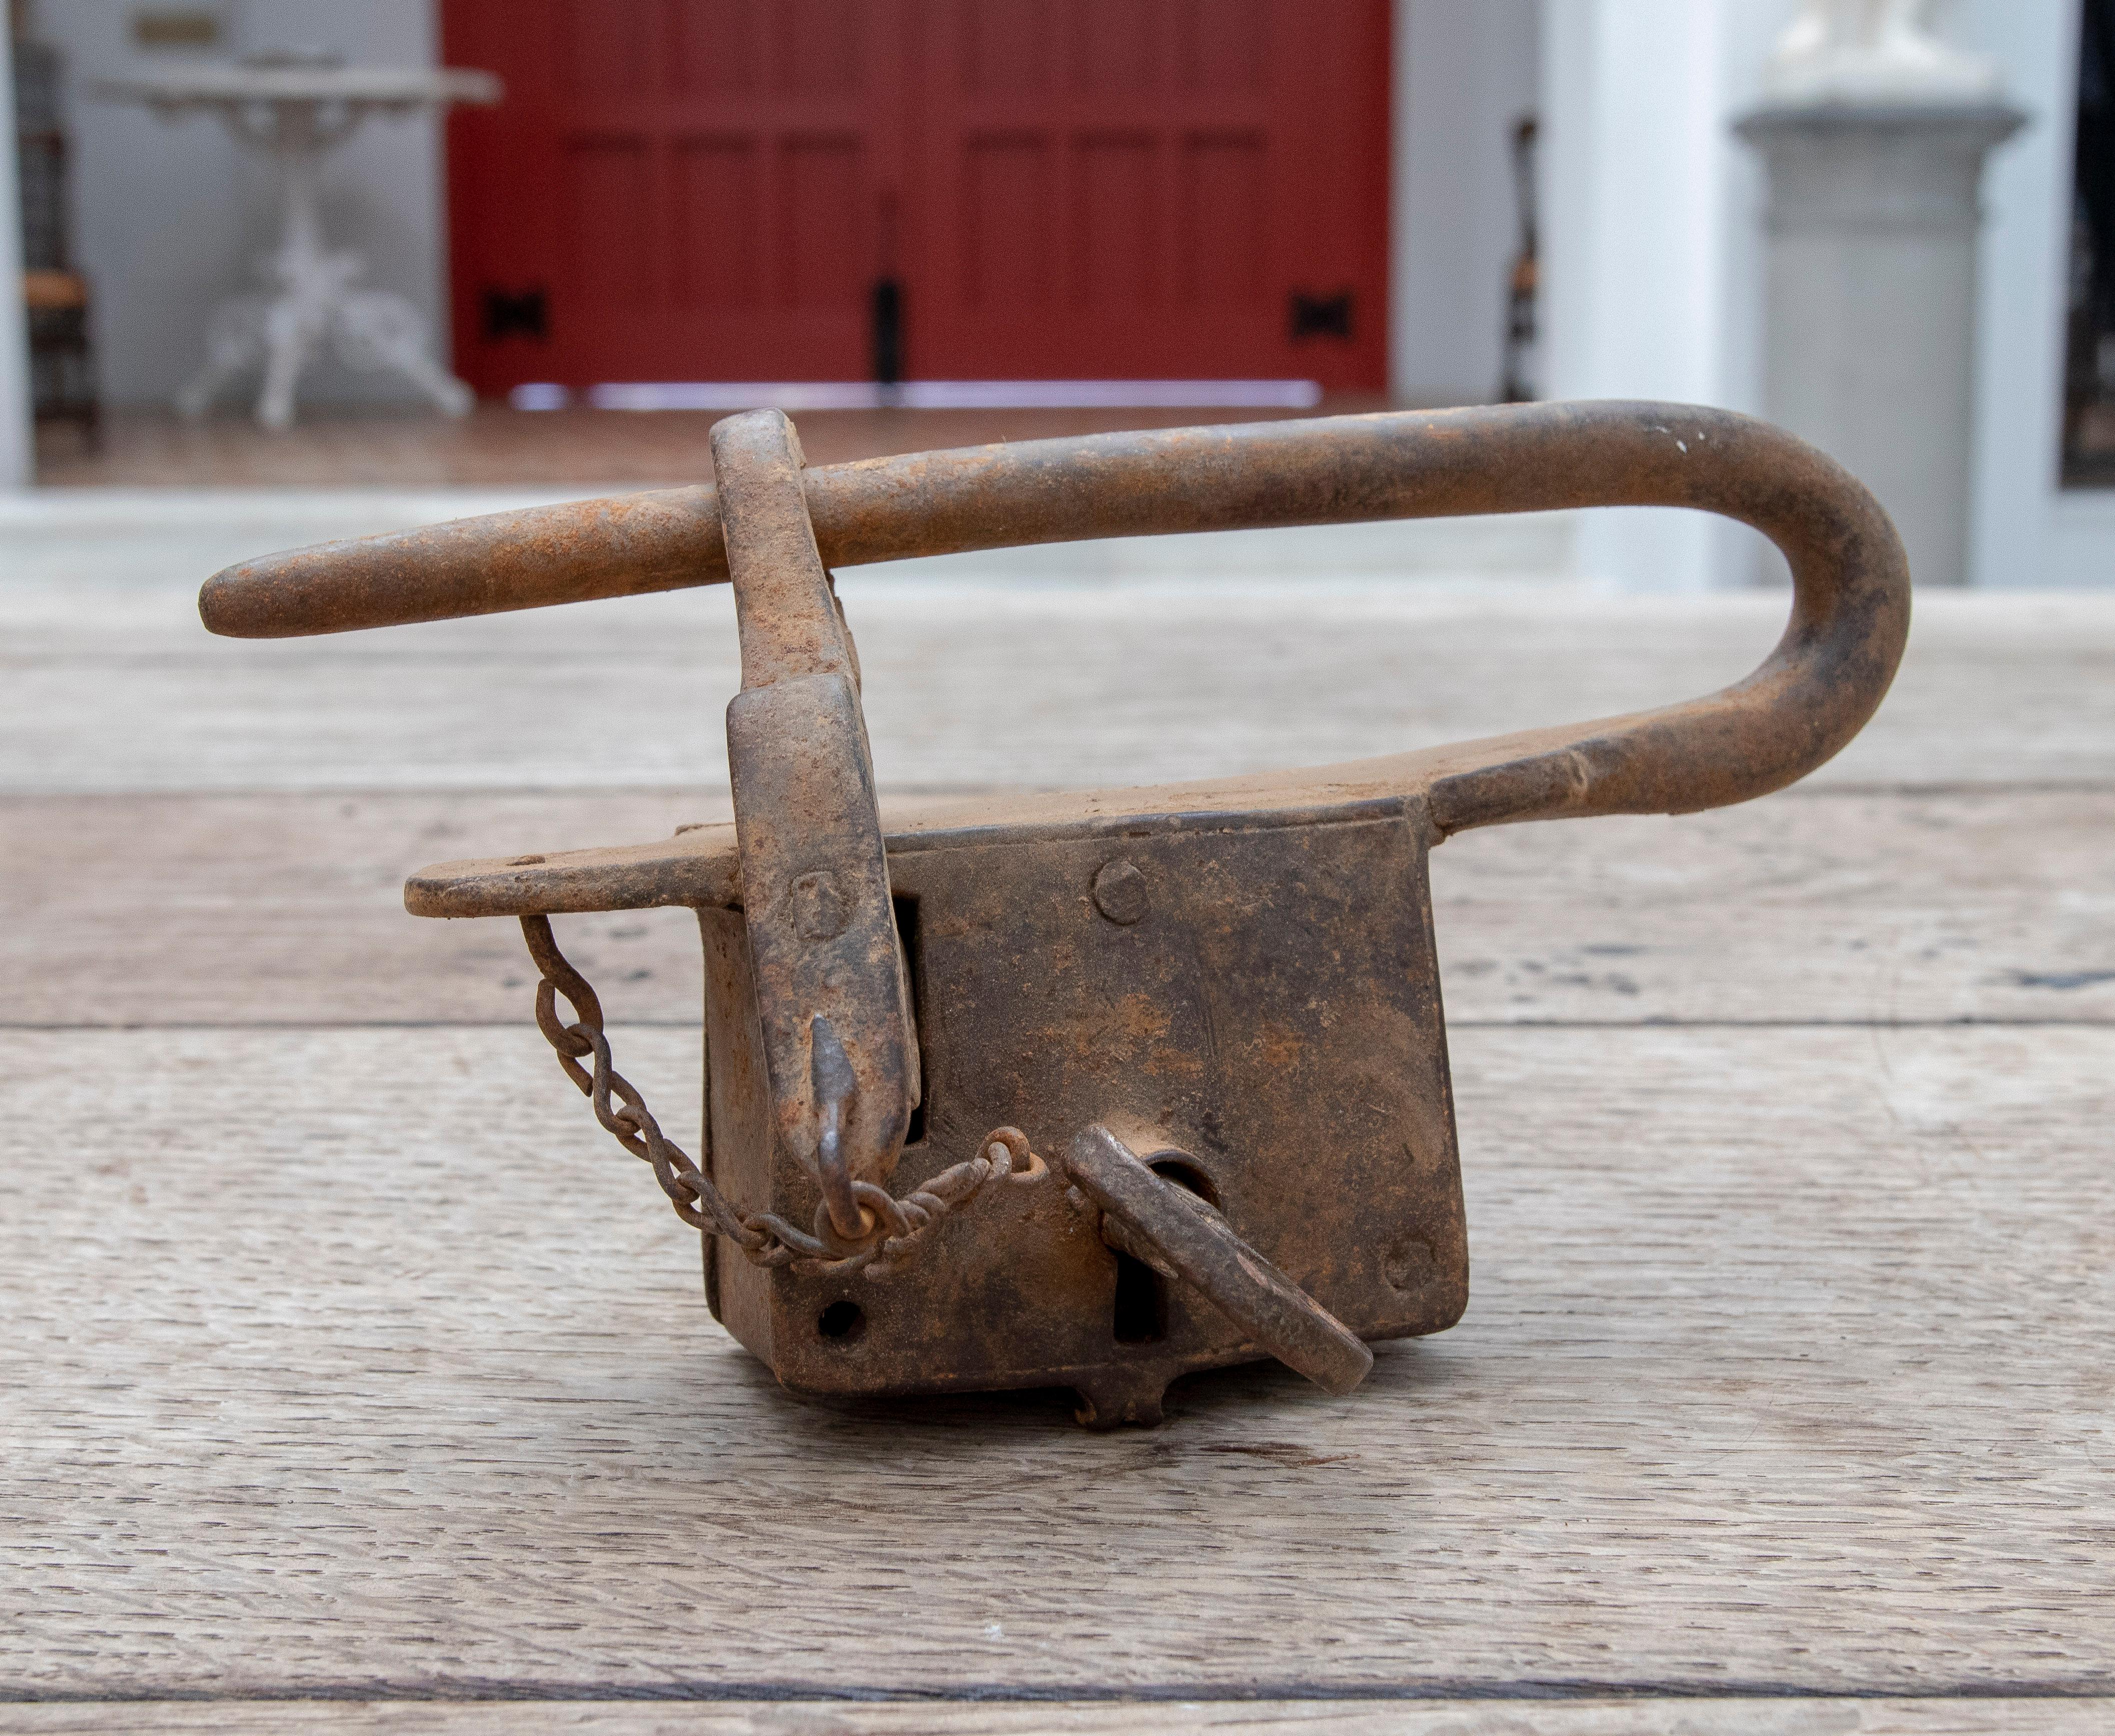 18th century Spanish iron padlock with original key.